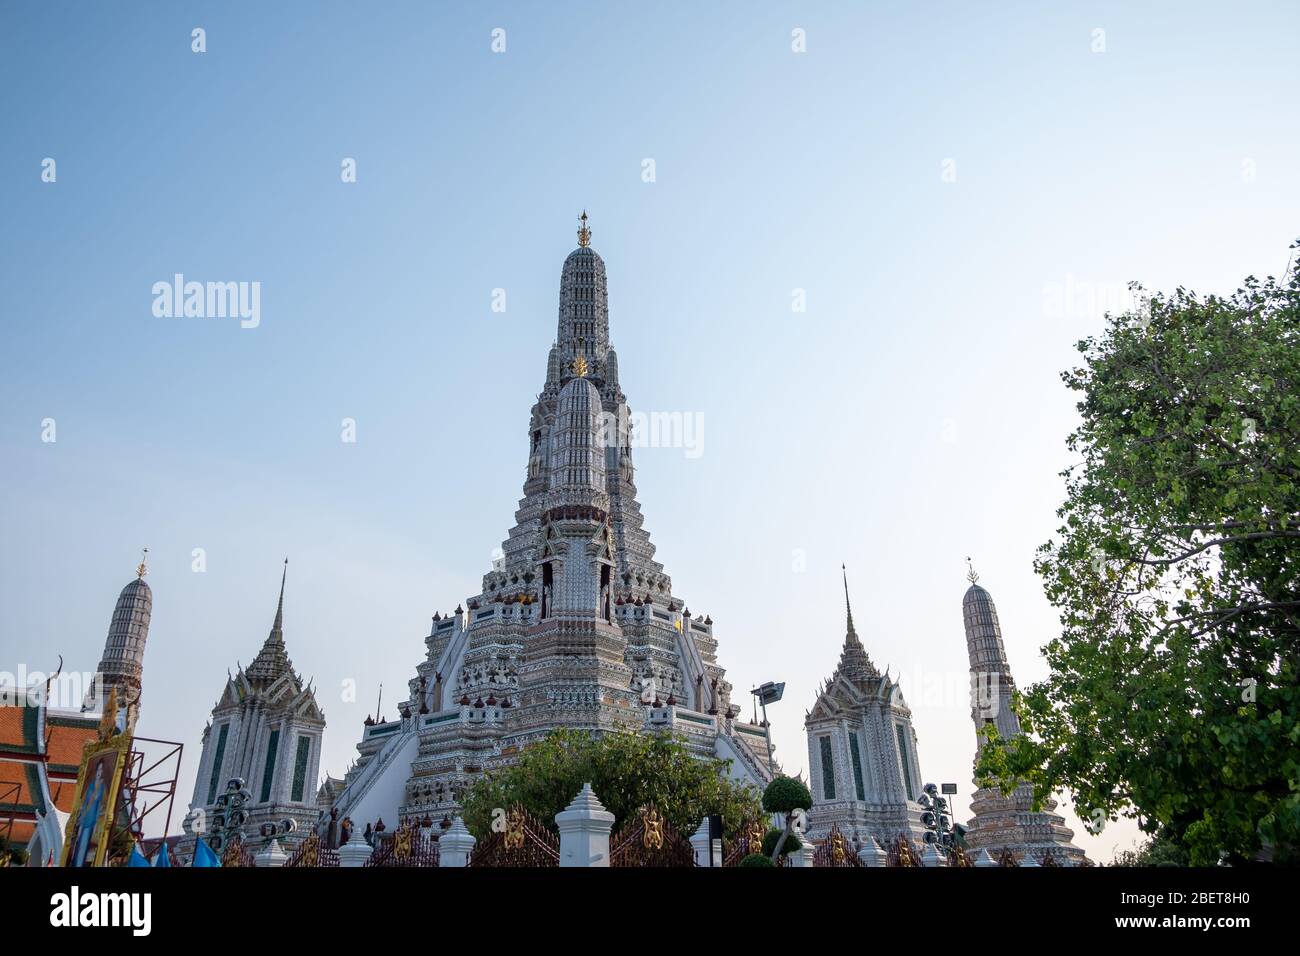 Wat Arun Tempel in einem blauen Himmel. Wat Arun ist ein buddhistischer Tempel in Bangkok, Thailand. Stockfoto